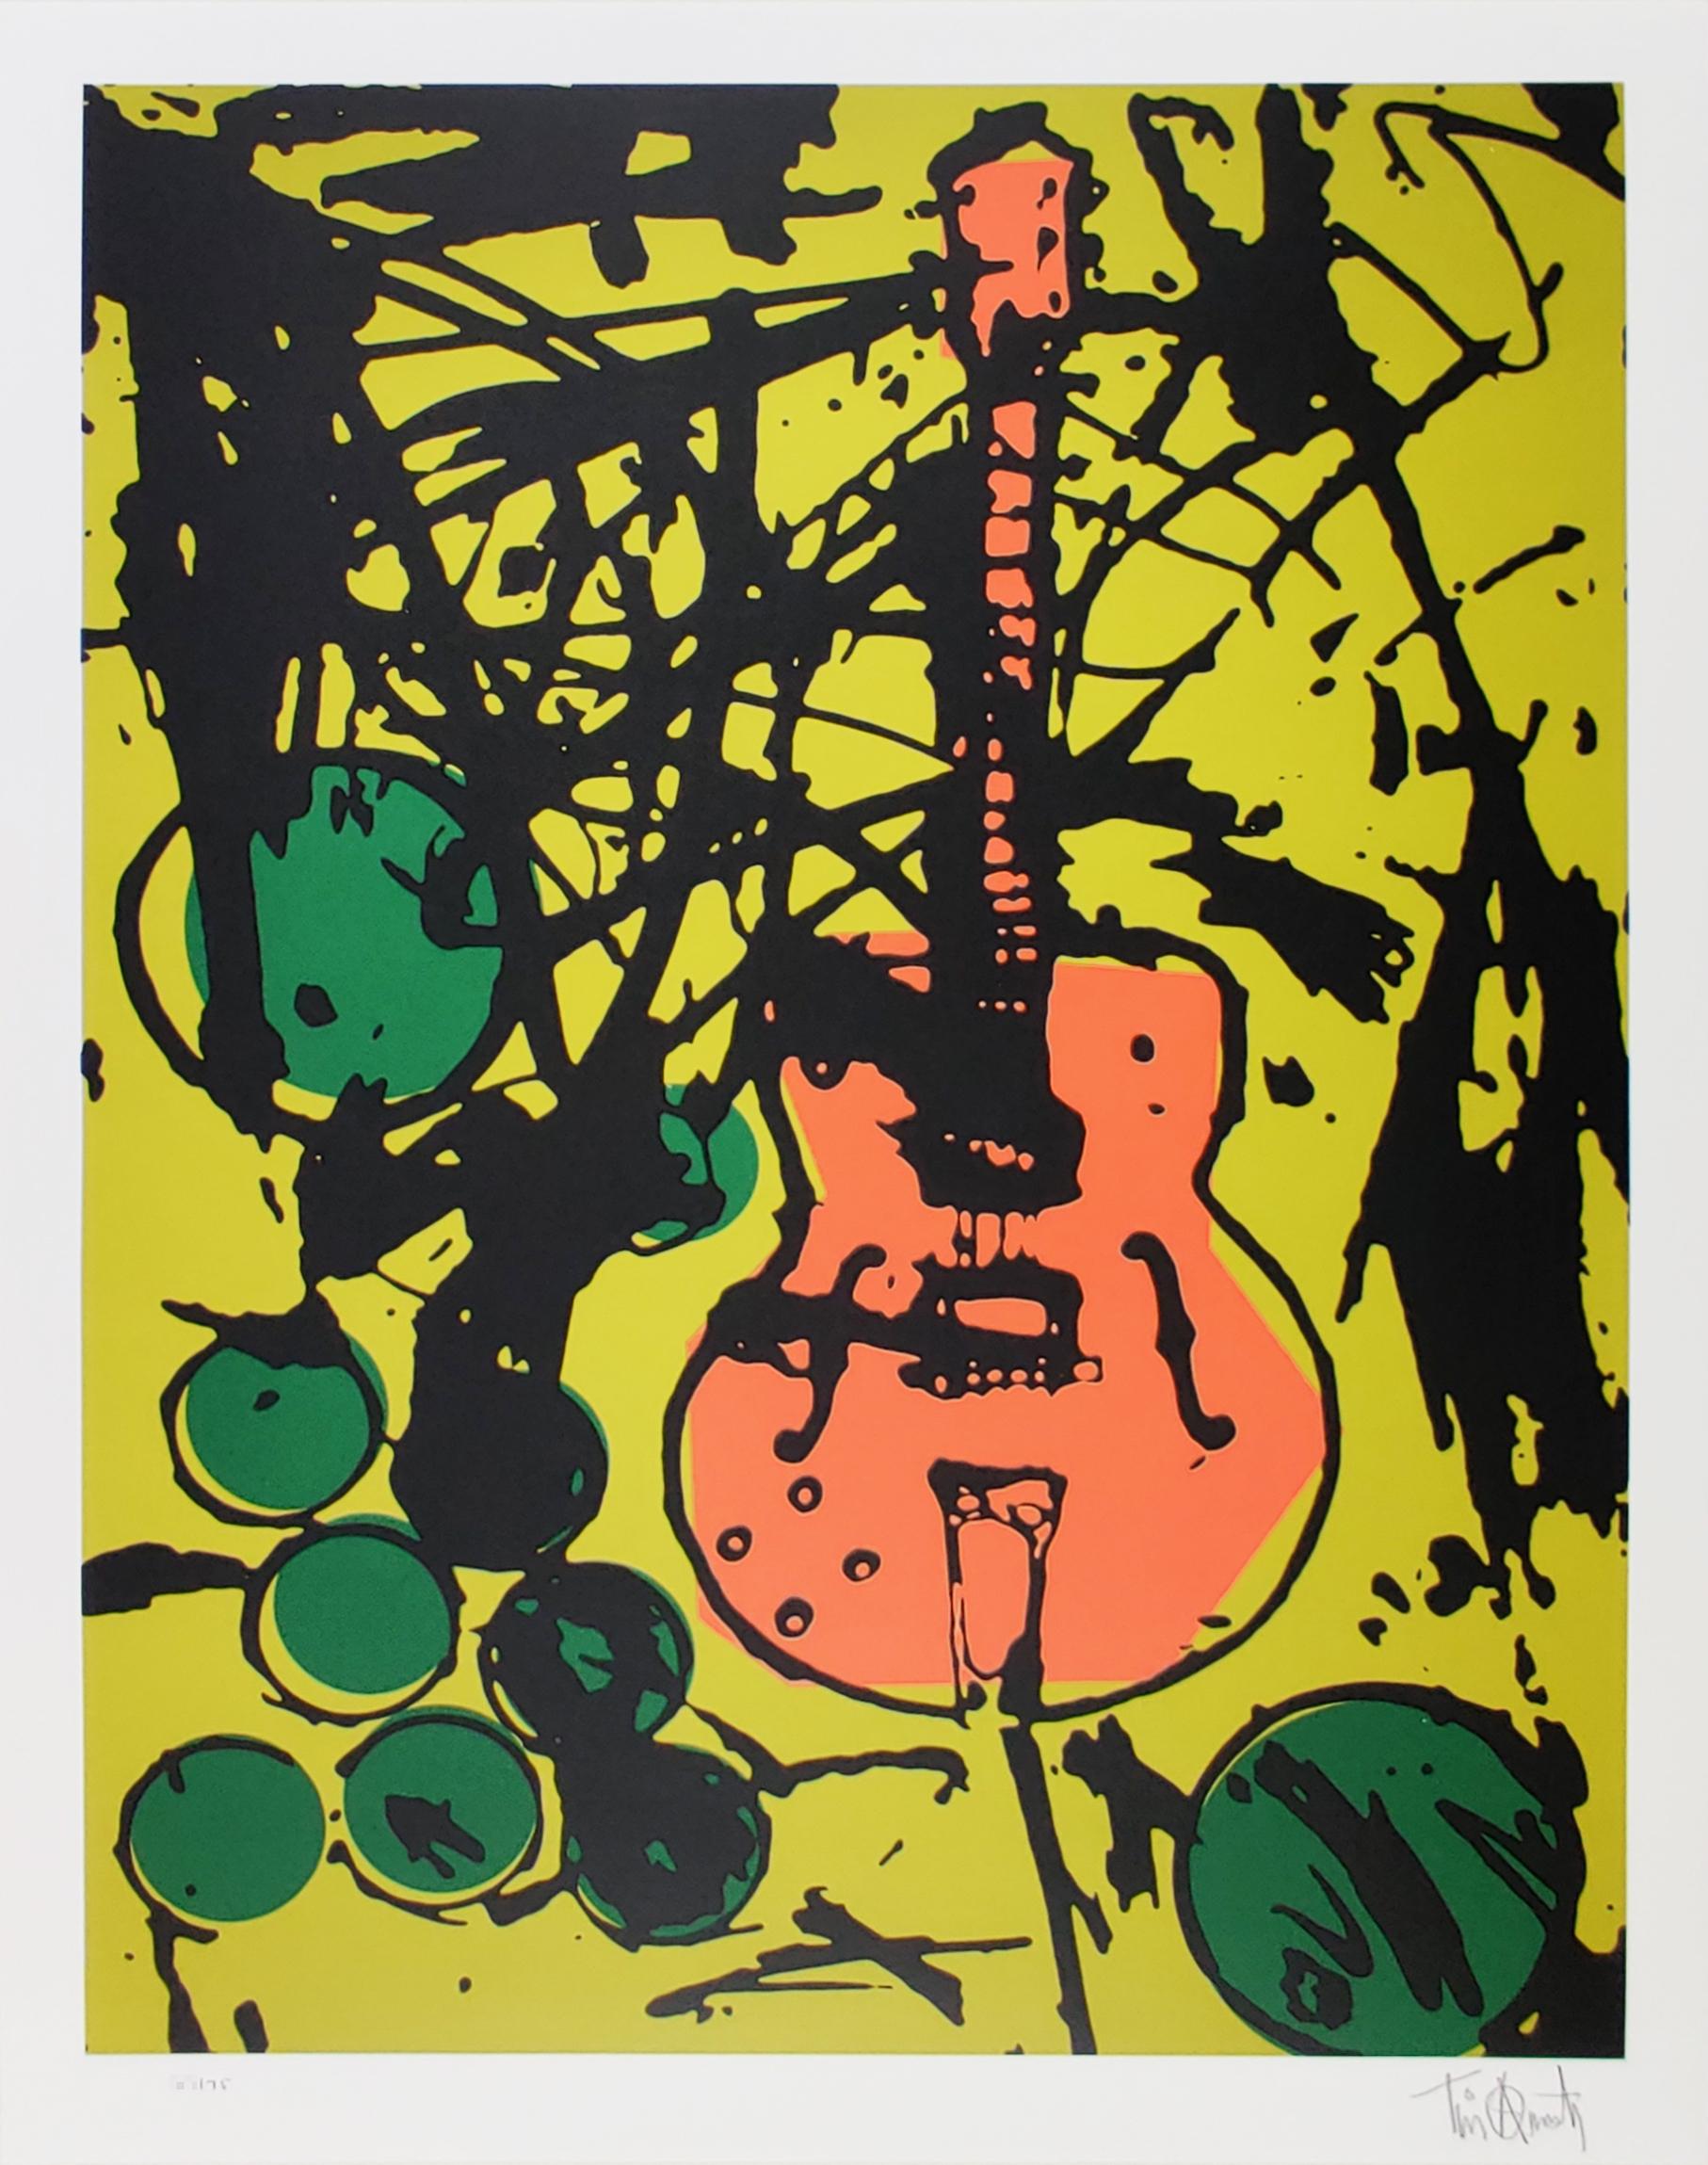 Meine Country Club-Gitarre von Tim Armstrong, Punk Rock Street Art Print. Stammt aus einer Auflage von 75 Exemplaren aus dem Jahr 2015. Abmessungen von 22 Zoll x 28 Zoll. Vierfarbiger handgezogener Siebdruck auf Coventry Rag, Archivpapier aus 100 %